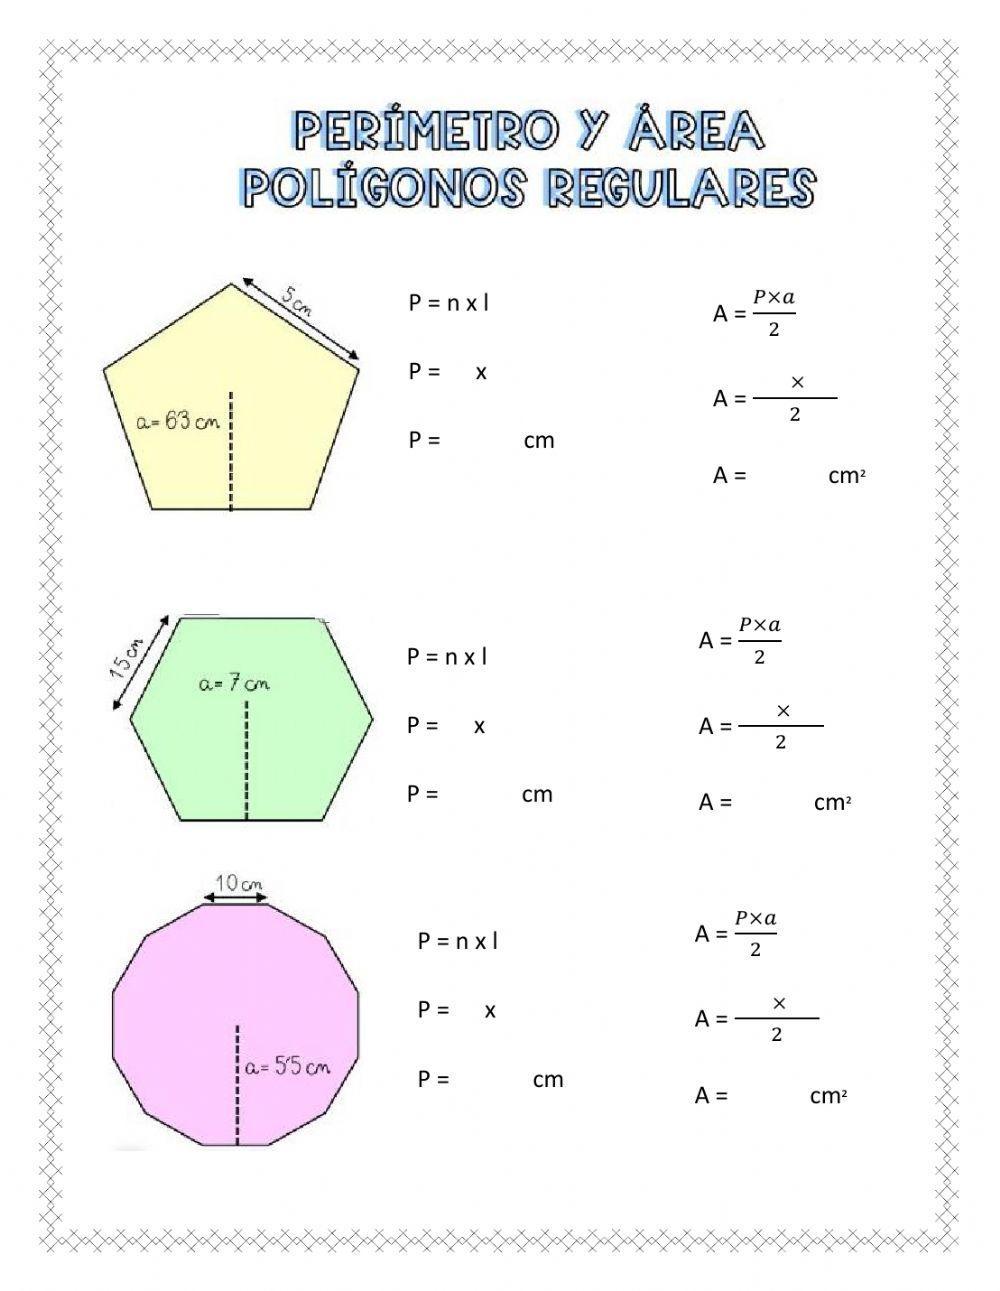 Perímetro y área de polígonos regulares